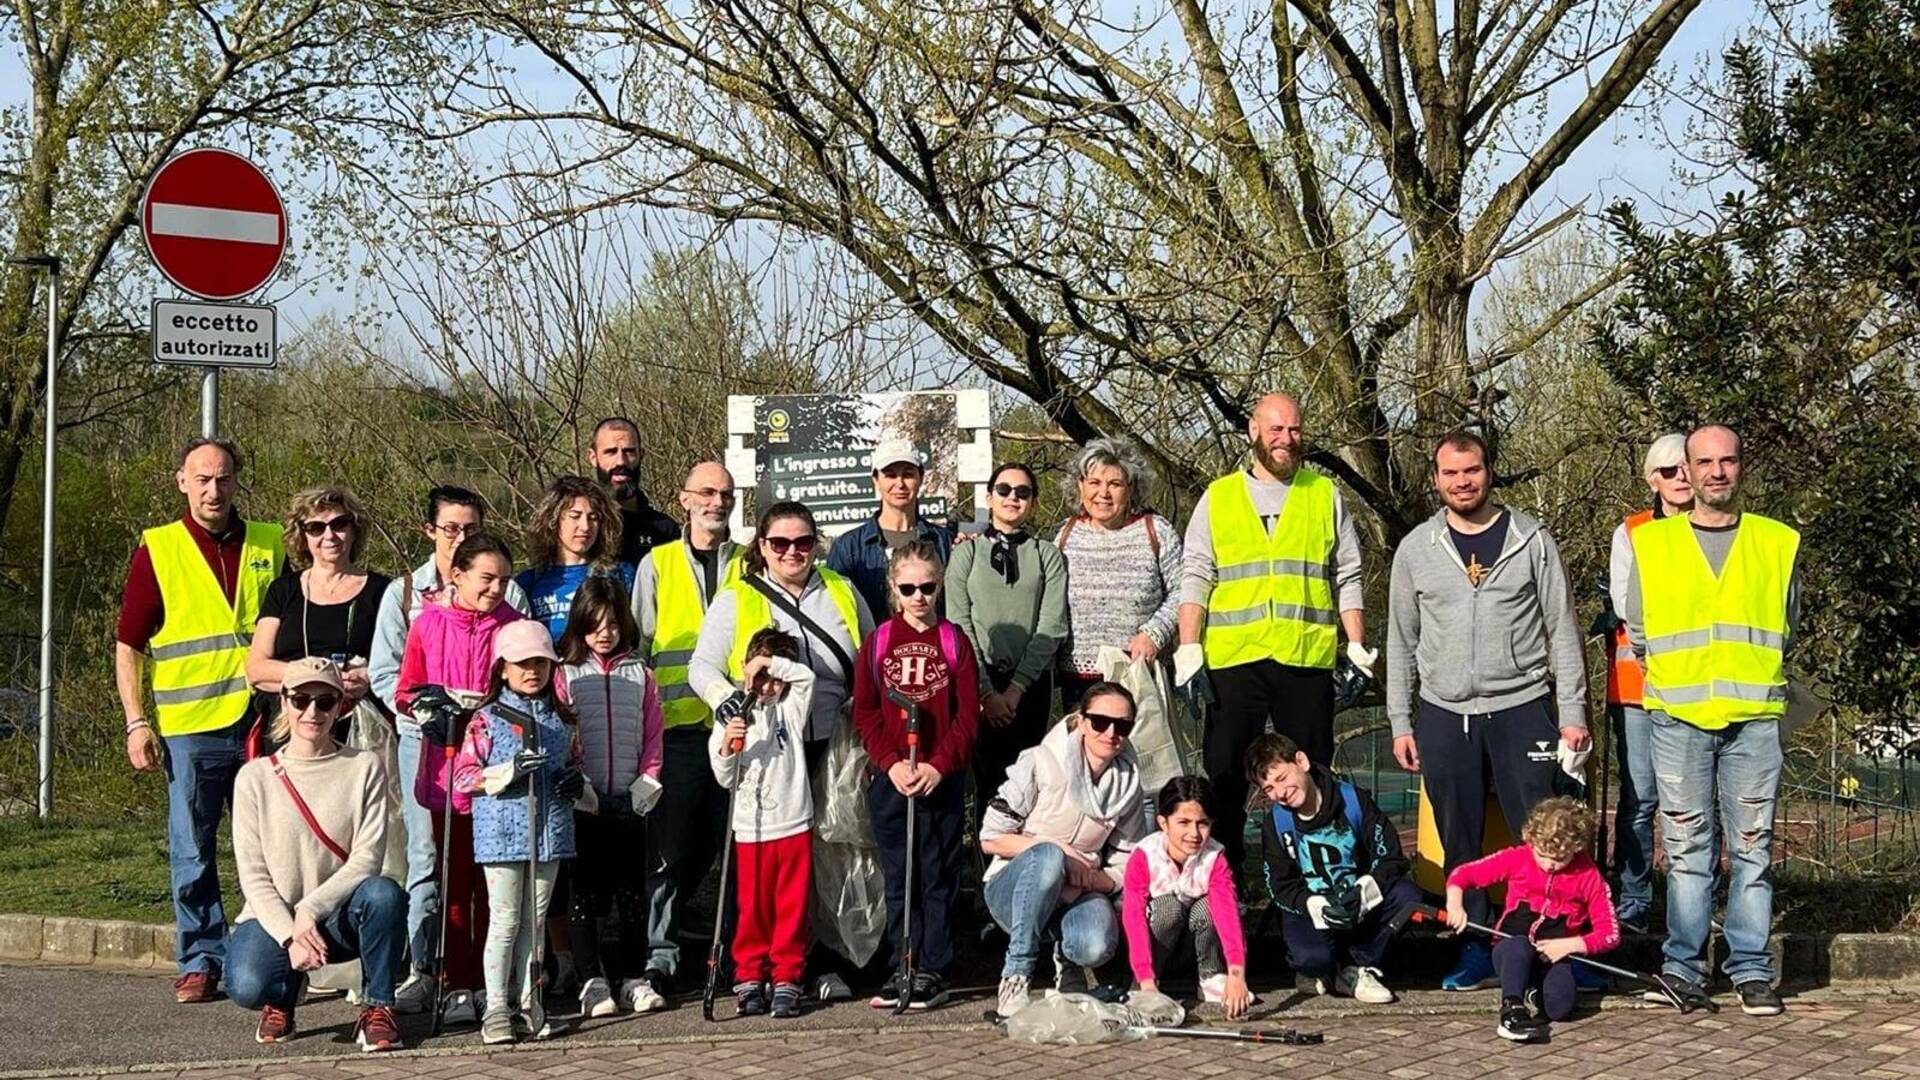 Giornata ecologica al parco dei Mughetti, il comune di Gerenzano ringrazia i volontari